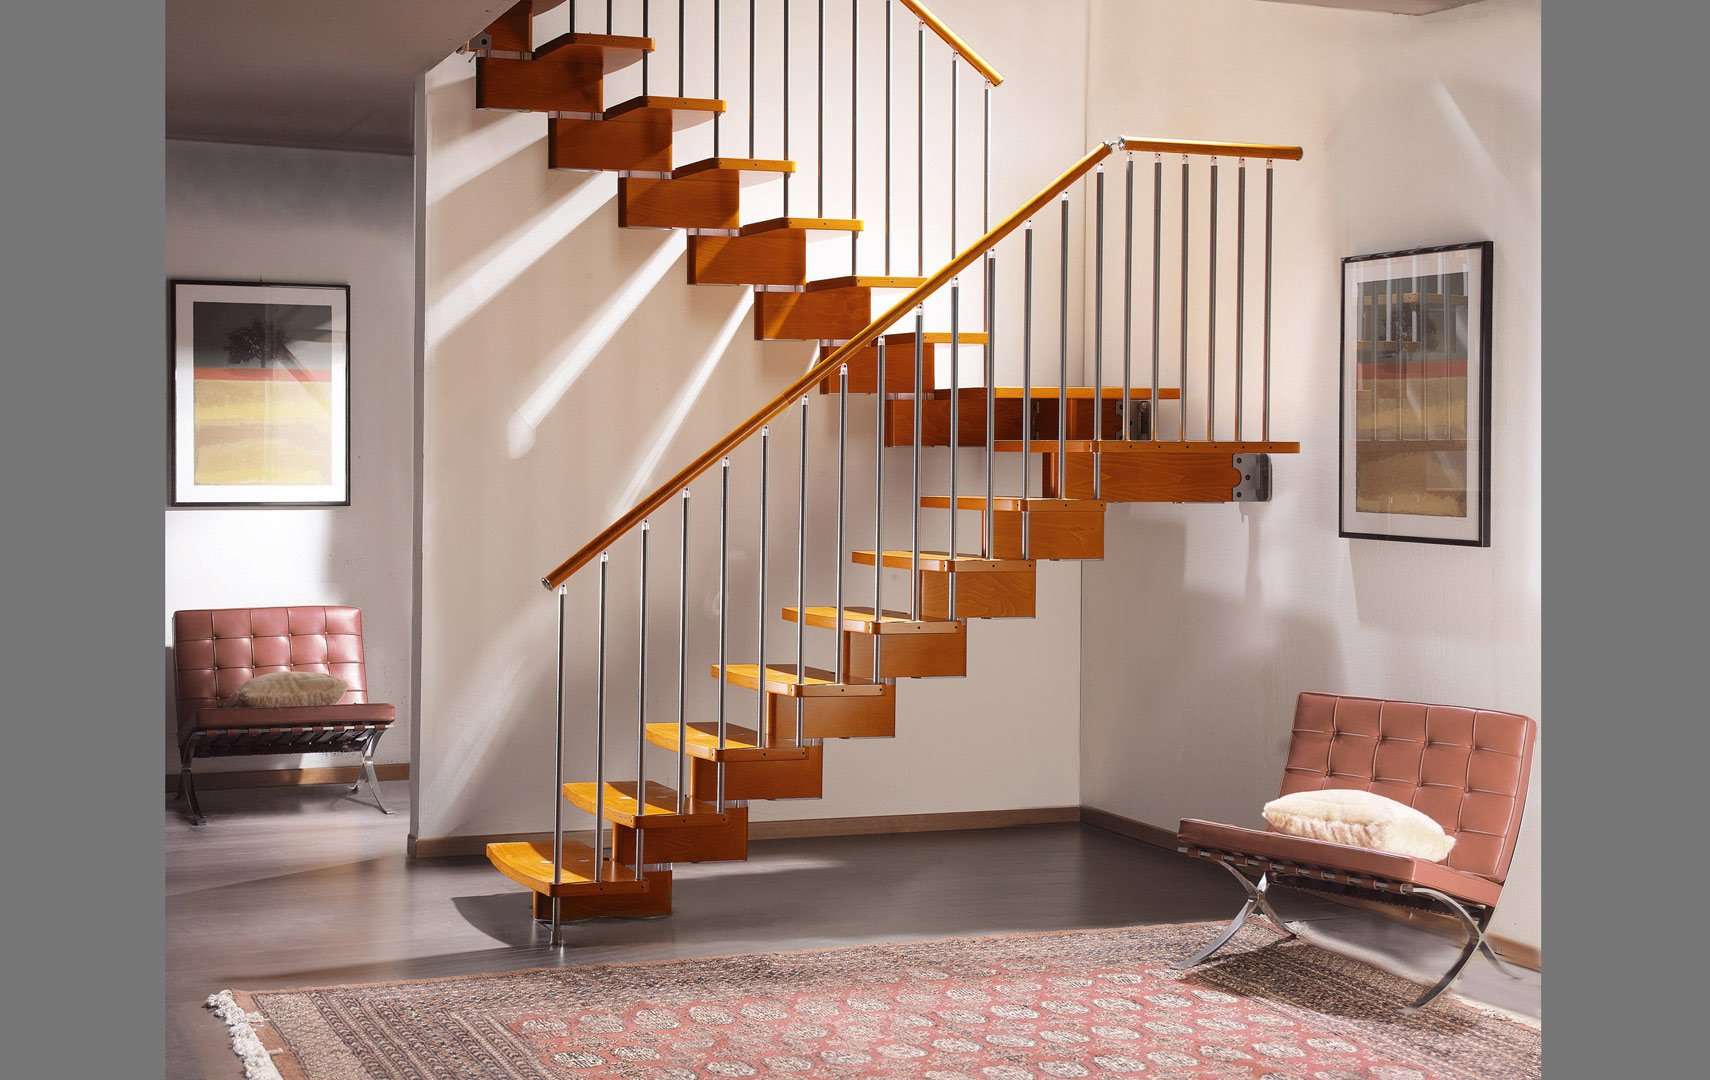 Nuvola, Открытая конструкция лестницы, лестница дизайн